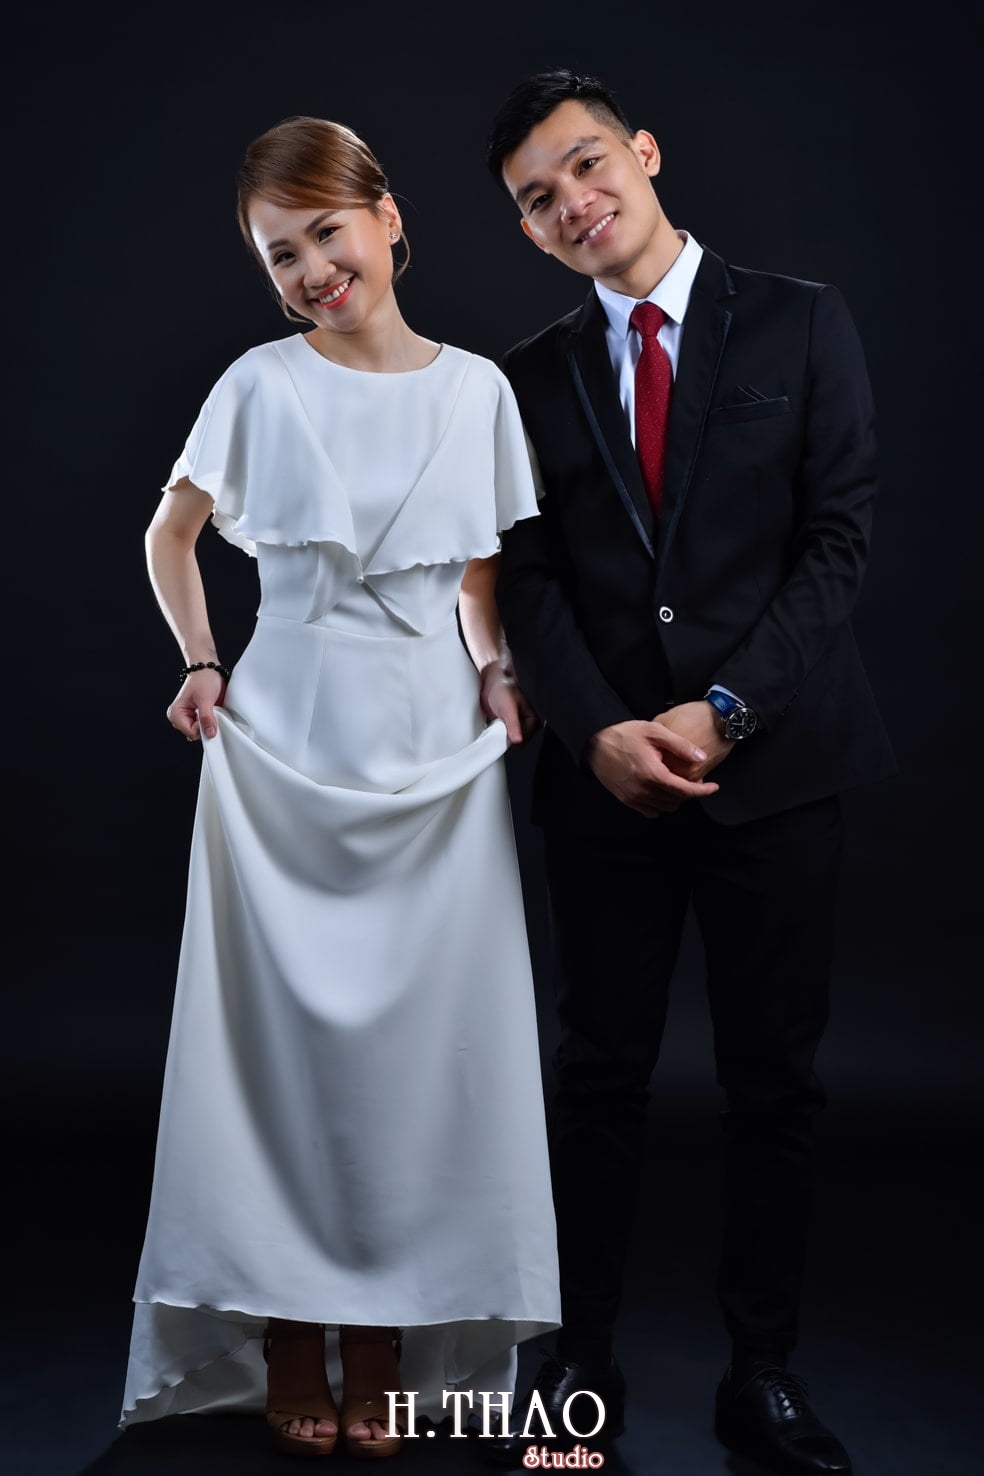 Anh couple 4 min - Concept chụp ảnh đôi hàn quốc HOT nhất hiện nay- HThao Studio